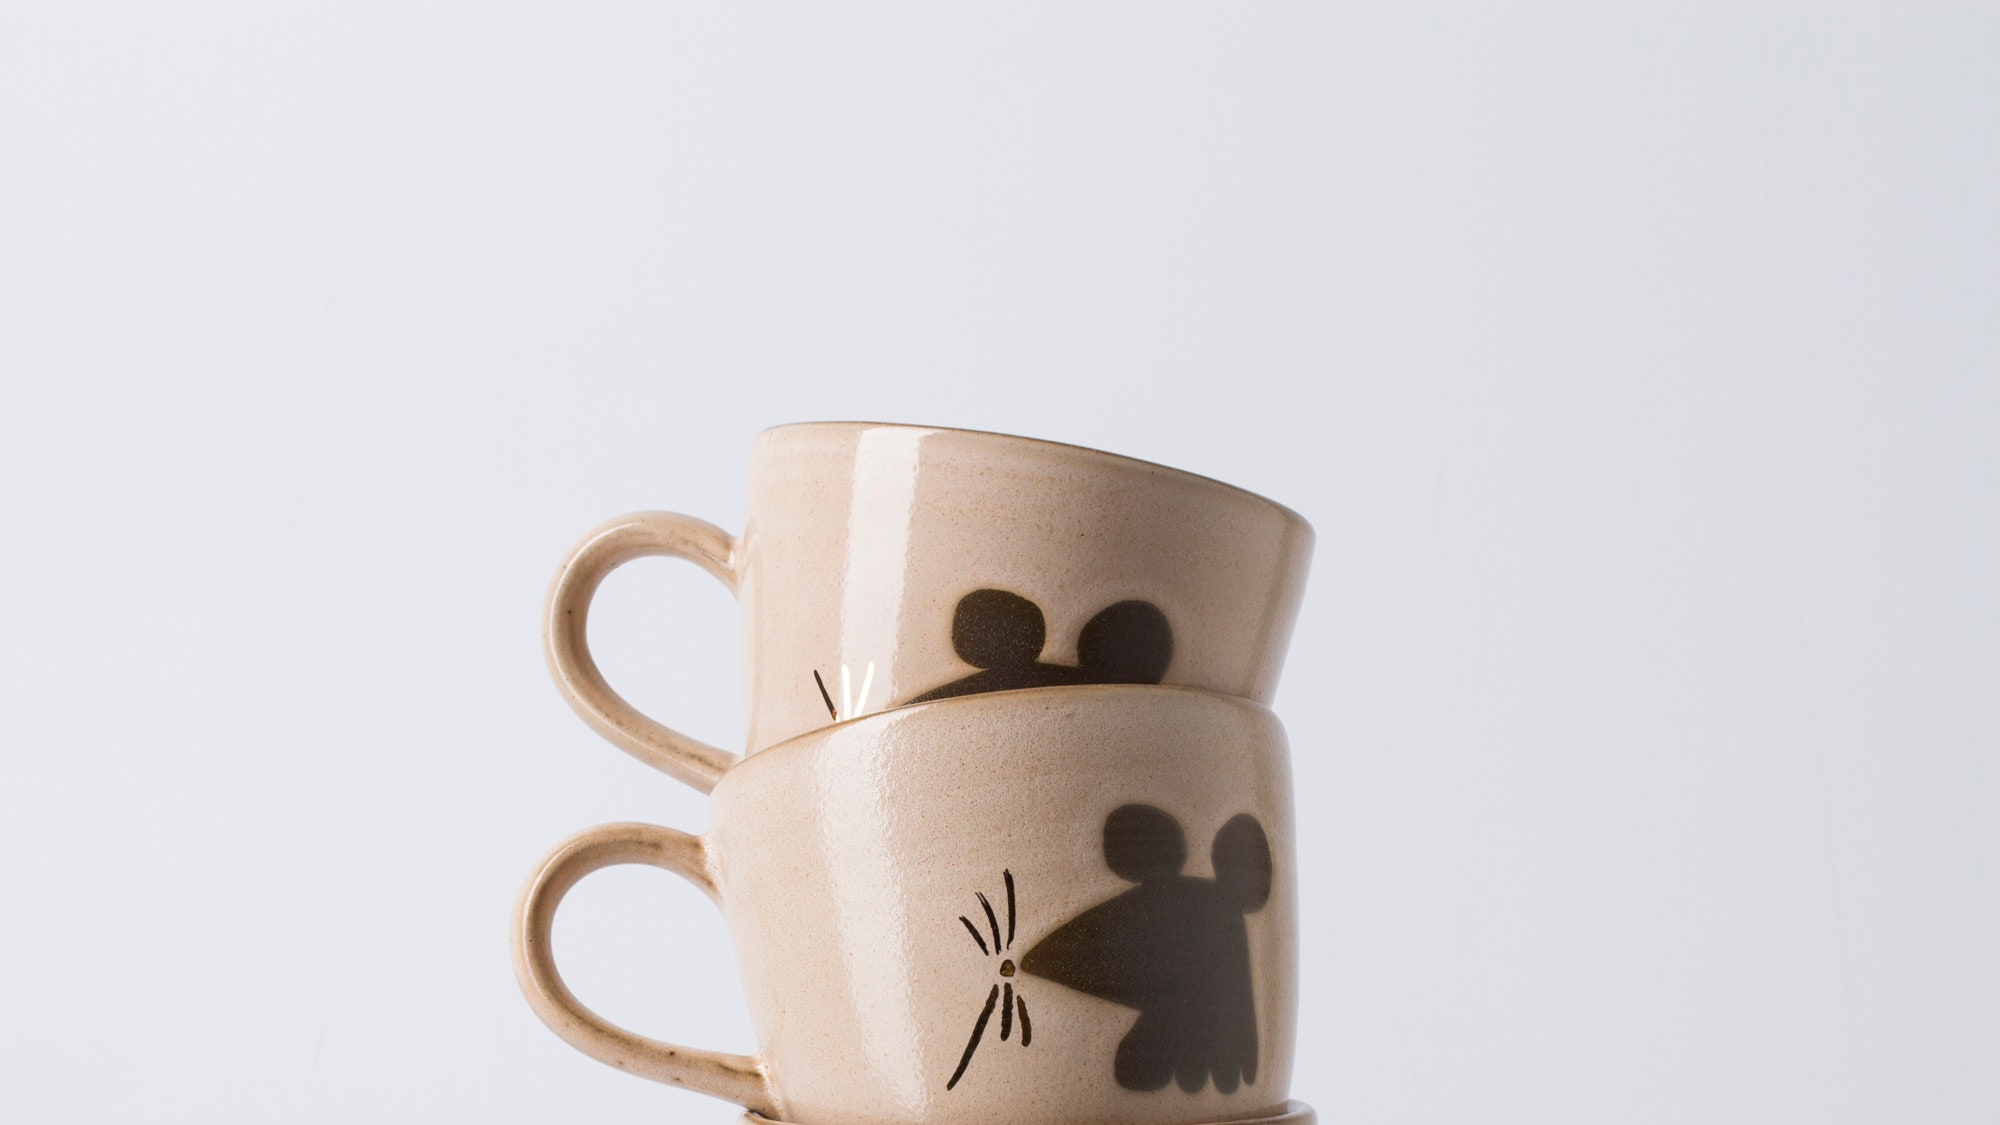 Новая керамика Маши Сомик для бренда Agami Ceramics